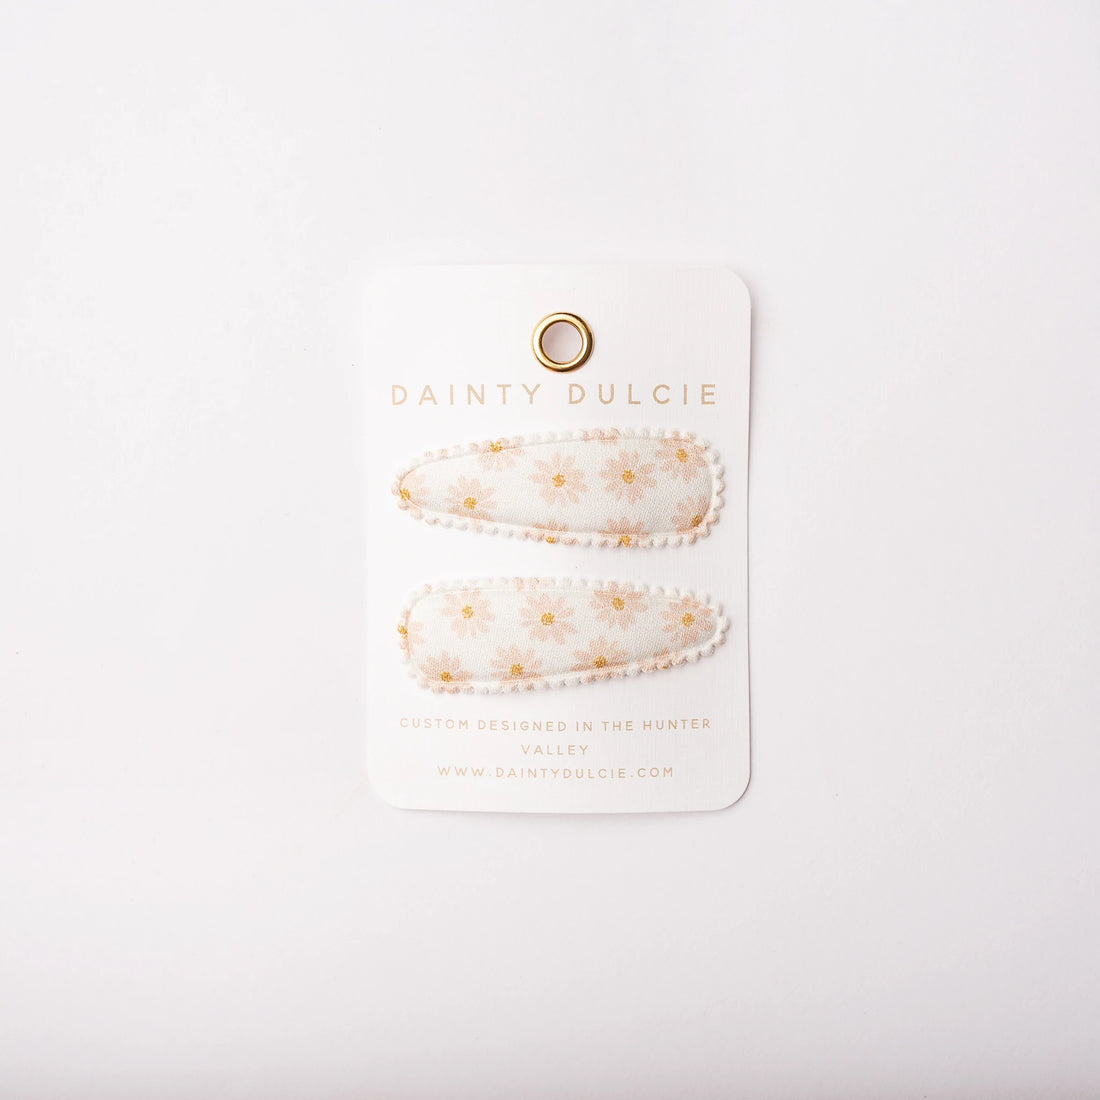 dainty dulcie pretty floral white and peach fabric hair clips